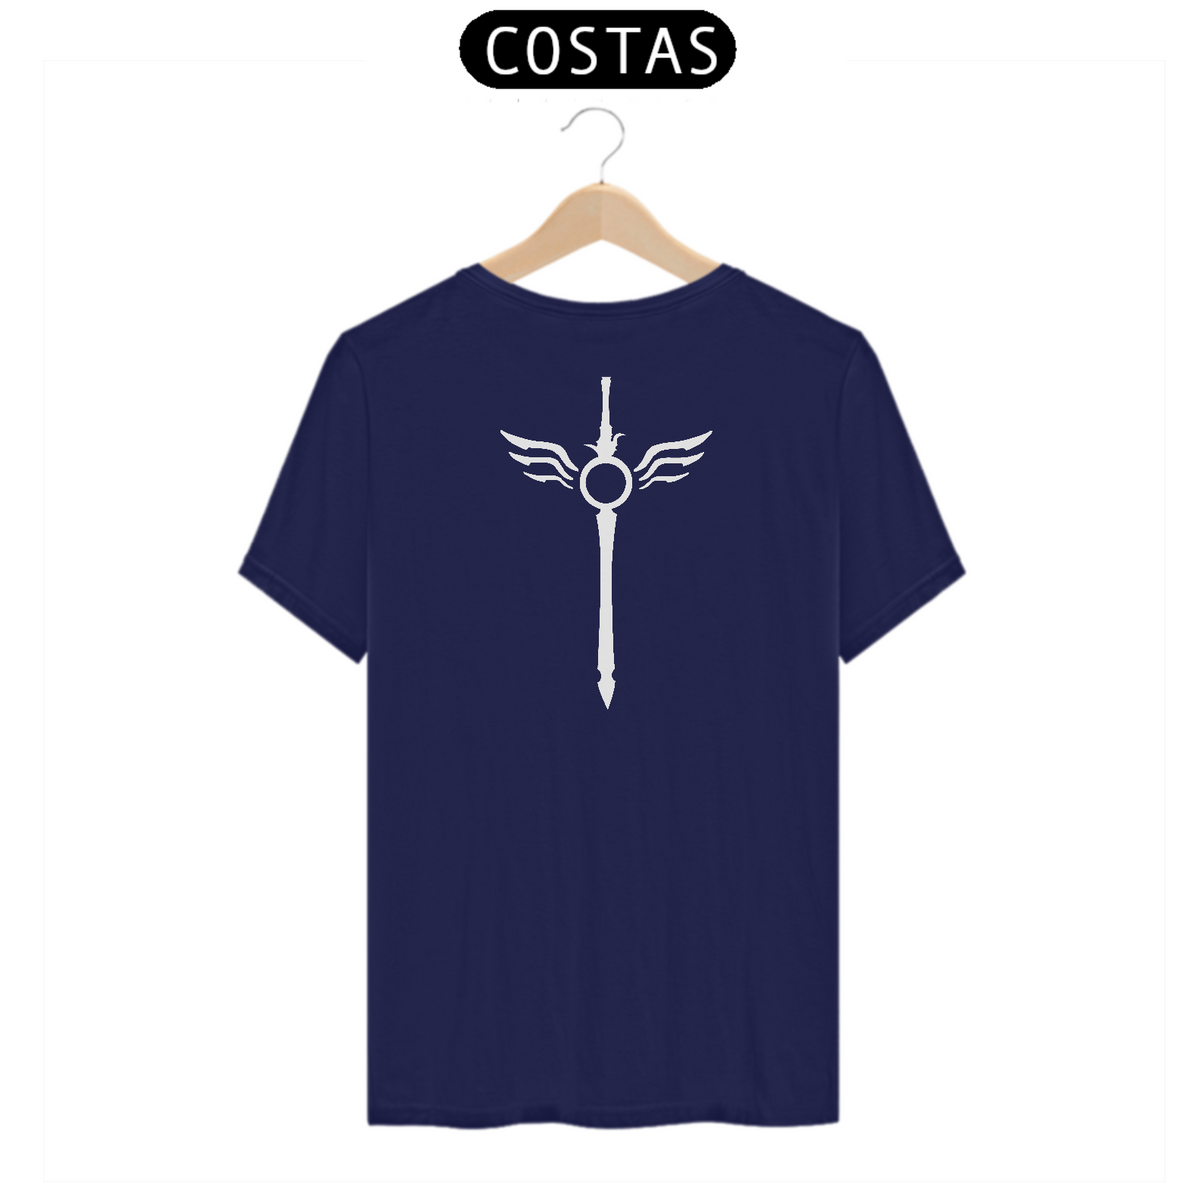 Nome do produto: Camiseta Espada com asas